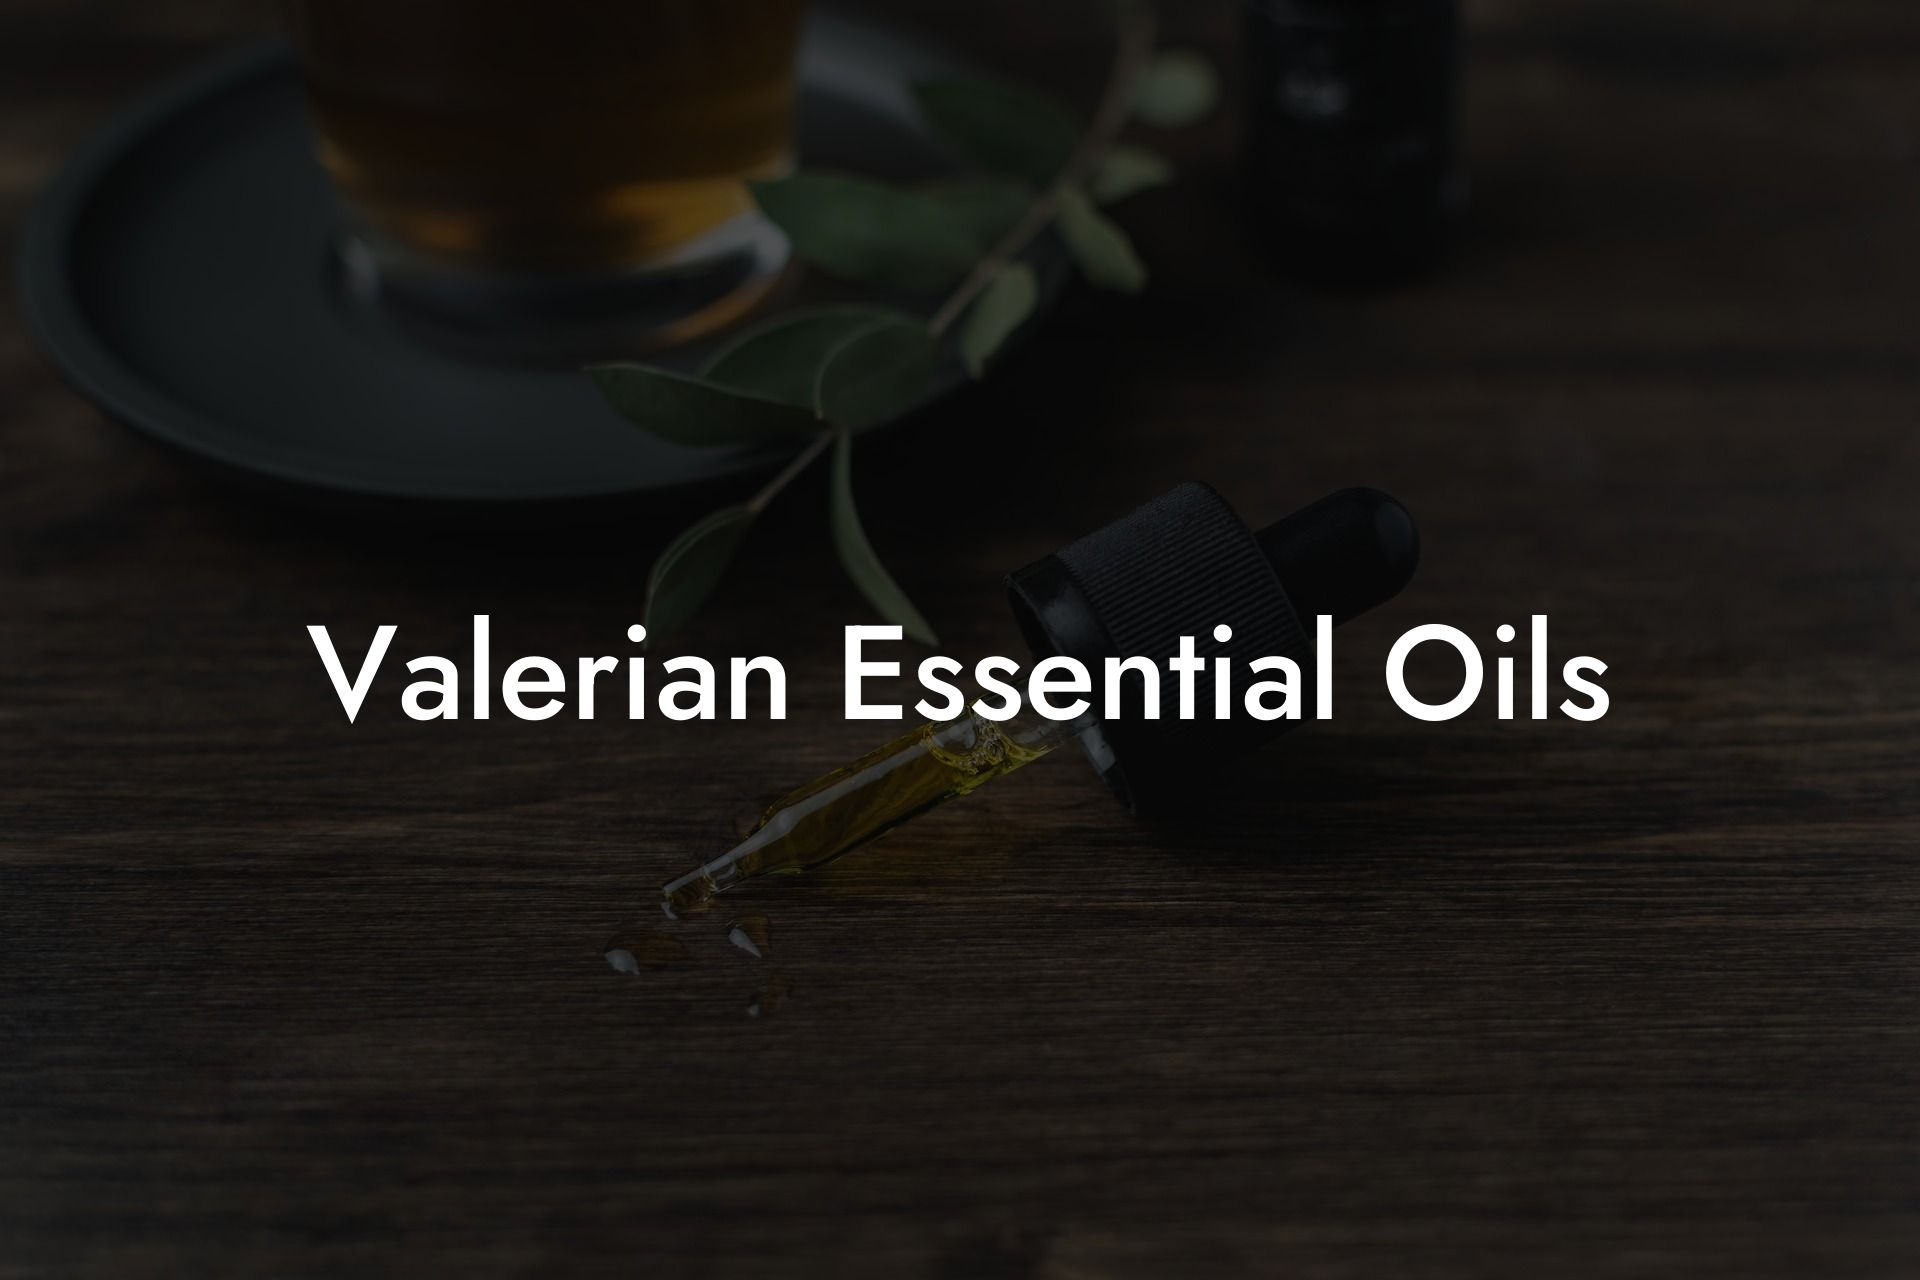 Valerian Essential Oils